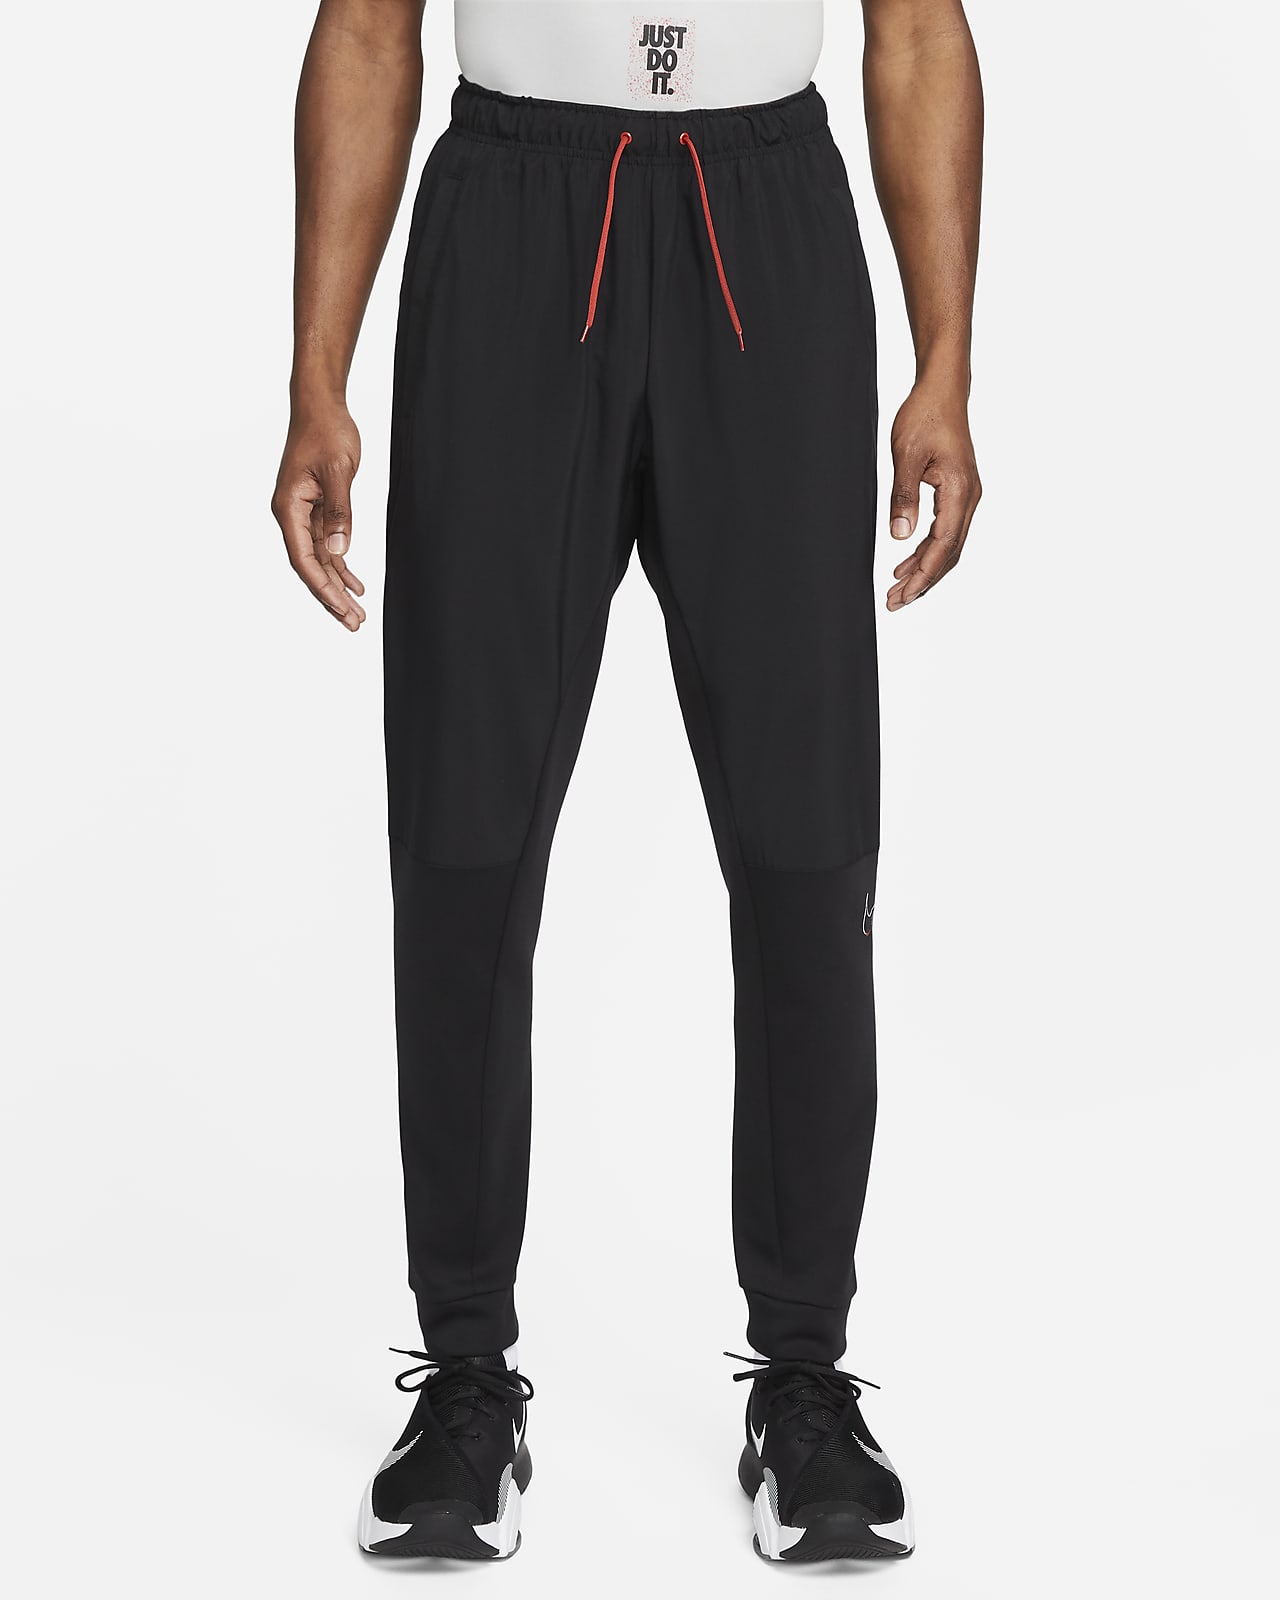 Nike Dri-FIT Men's Tapered Training Pants